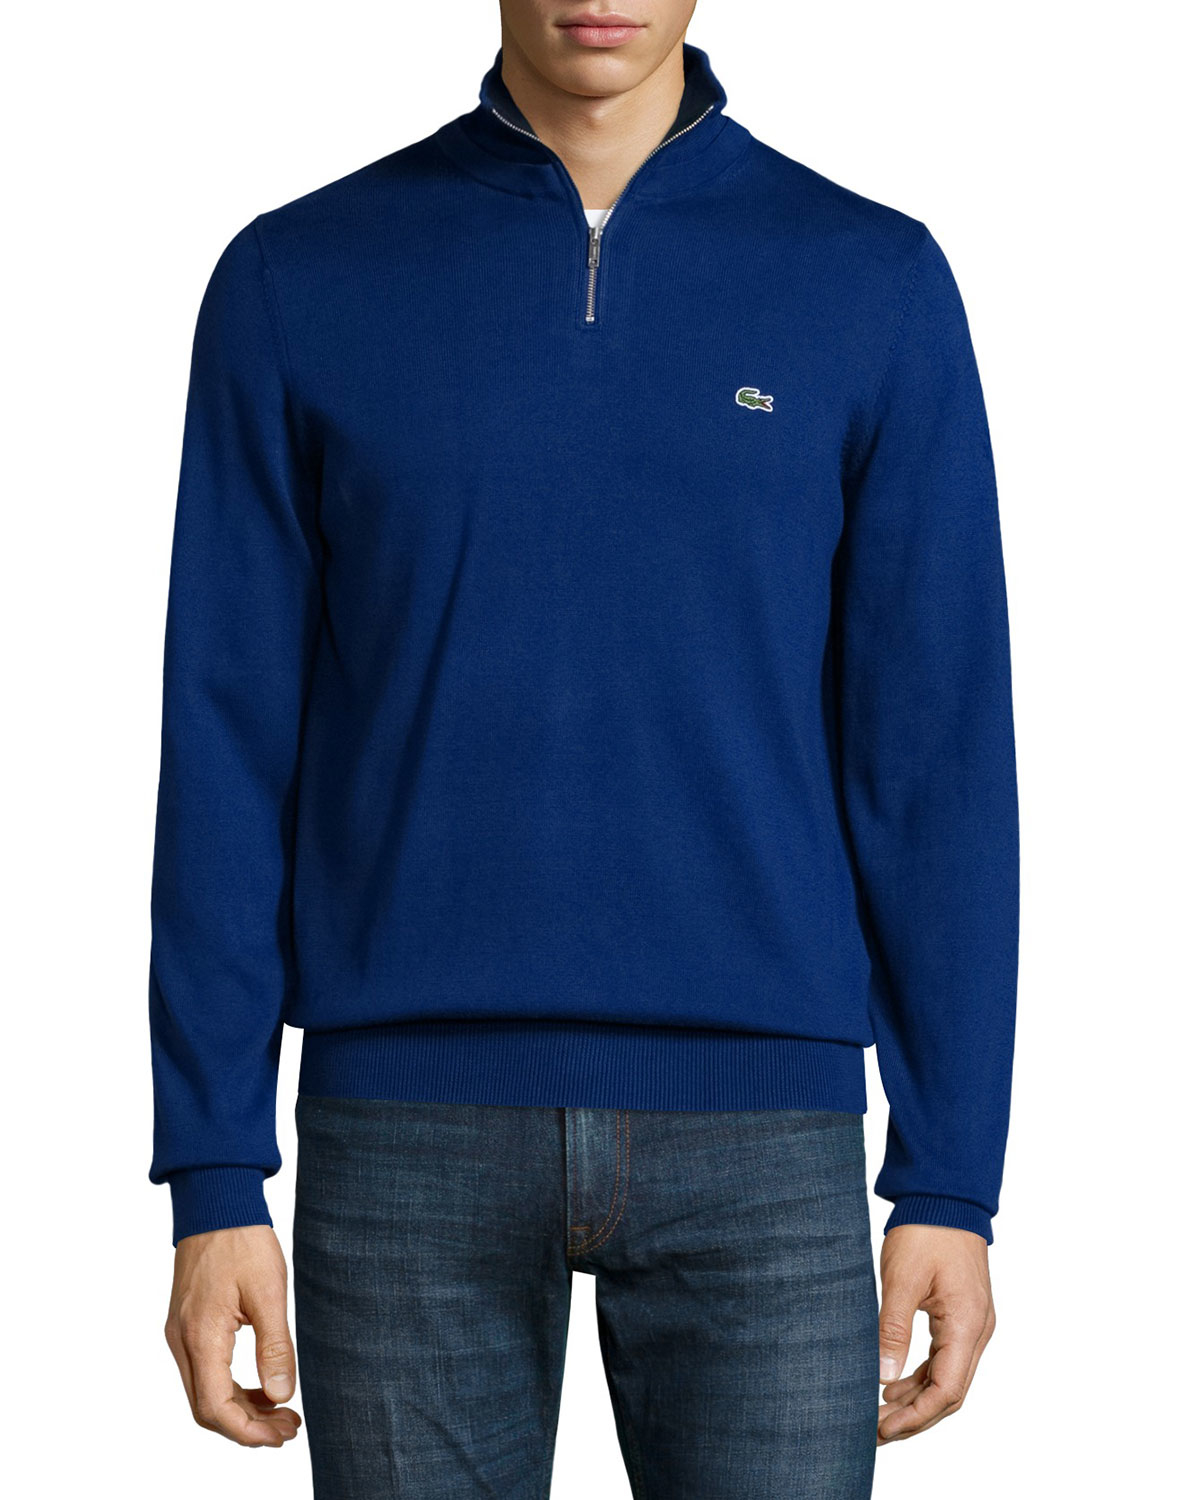 Lyst - Lacoste Half-zip Jersey Knit Sweatshirt in Blue for Men